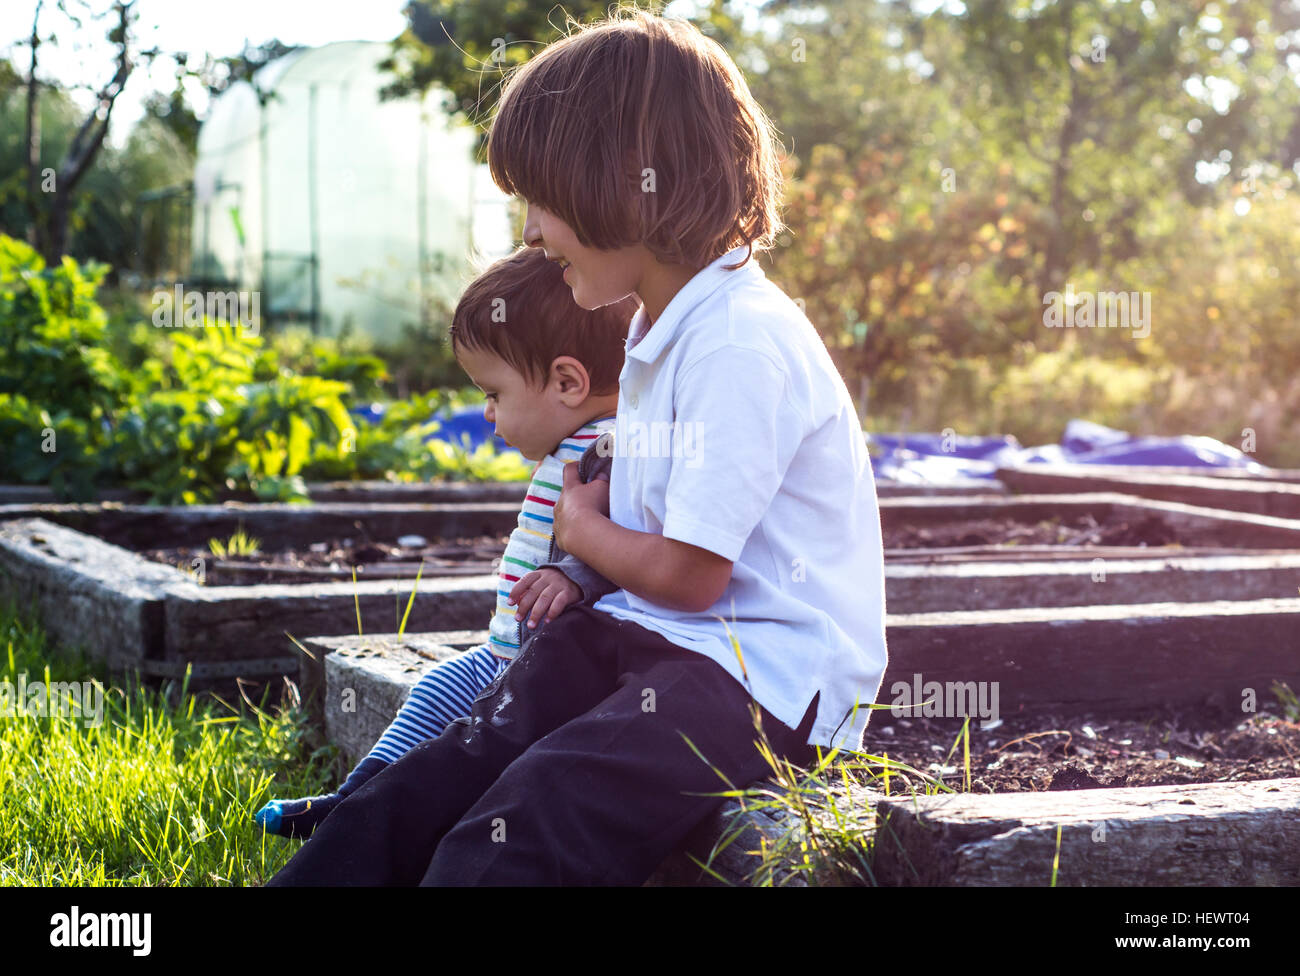 Junge und seinem kleinen Bruder Zusammensitzen im sonnigen ländlichen Garten Stockfoto